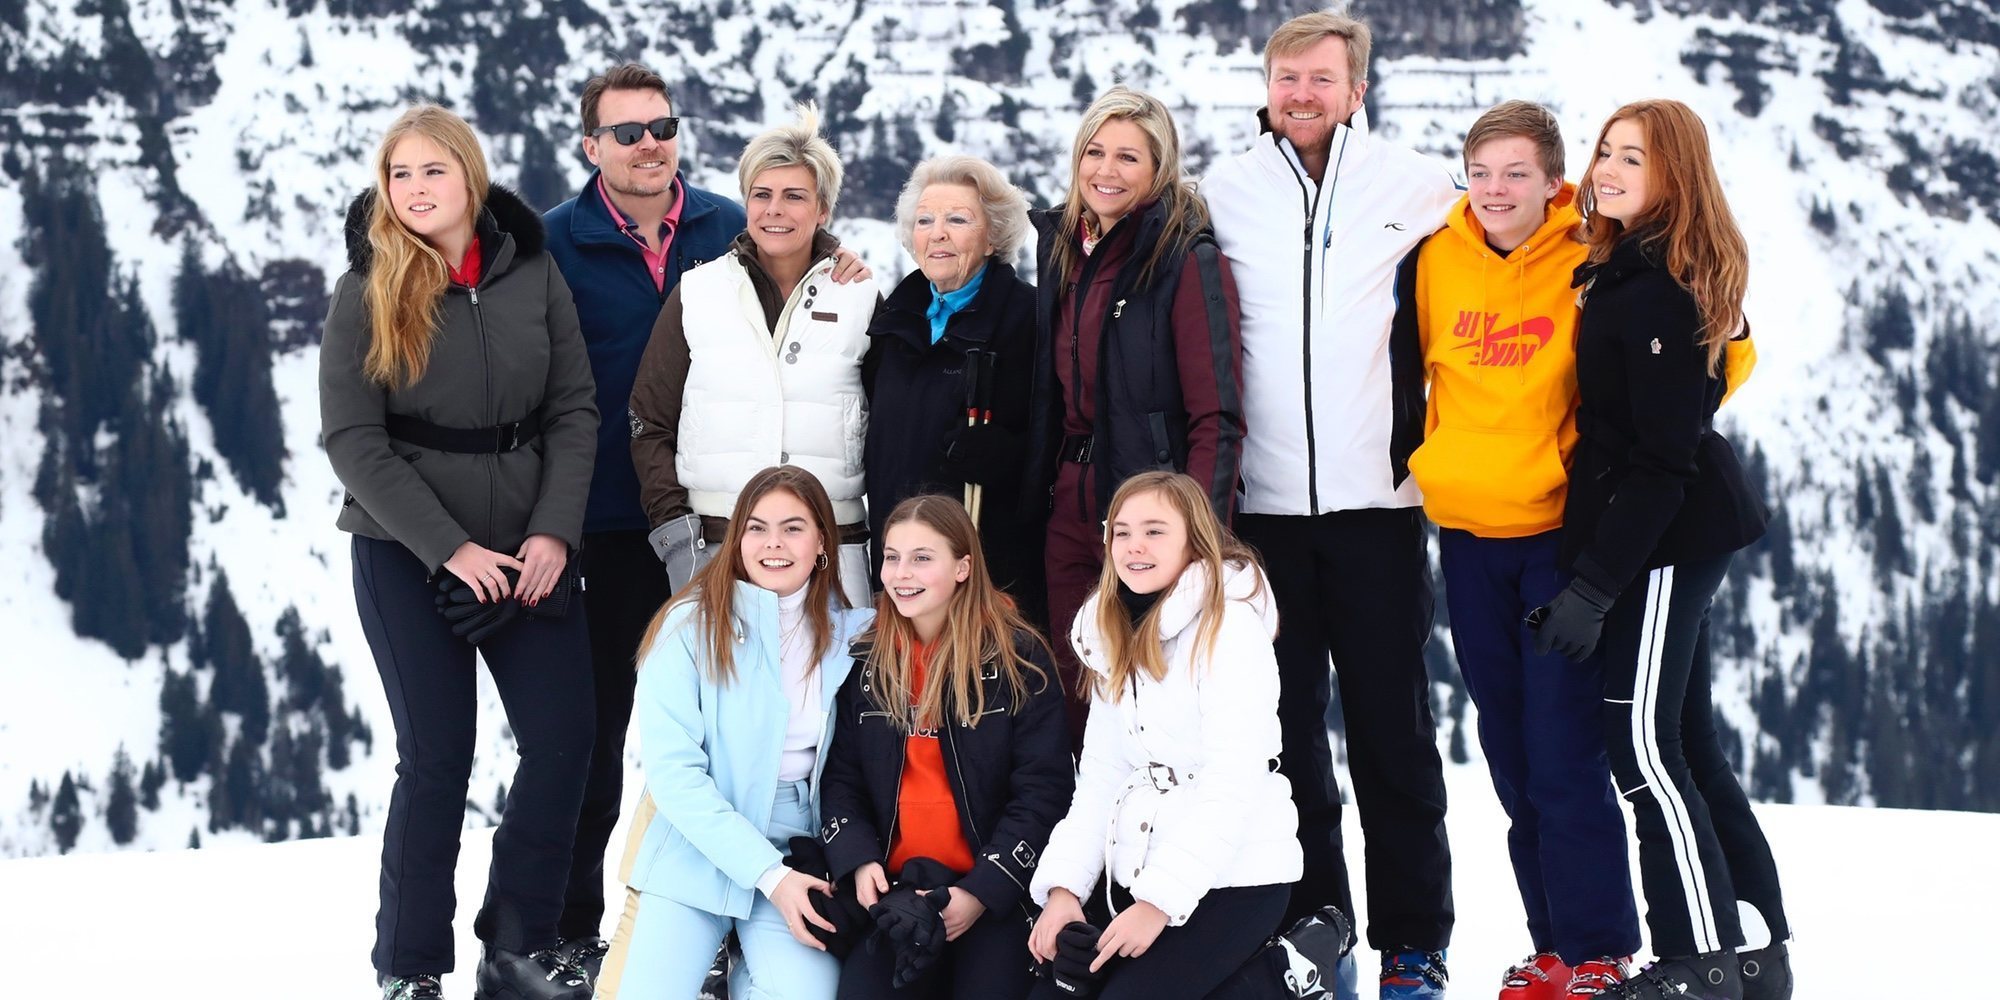 La Familia Real Holandesa cancela sus tradicionales vacaciones de invierno en Lech debido a la pandemia